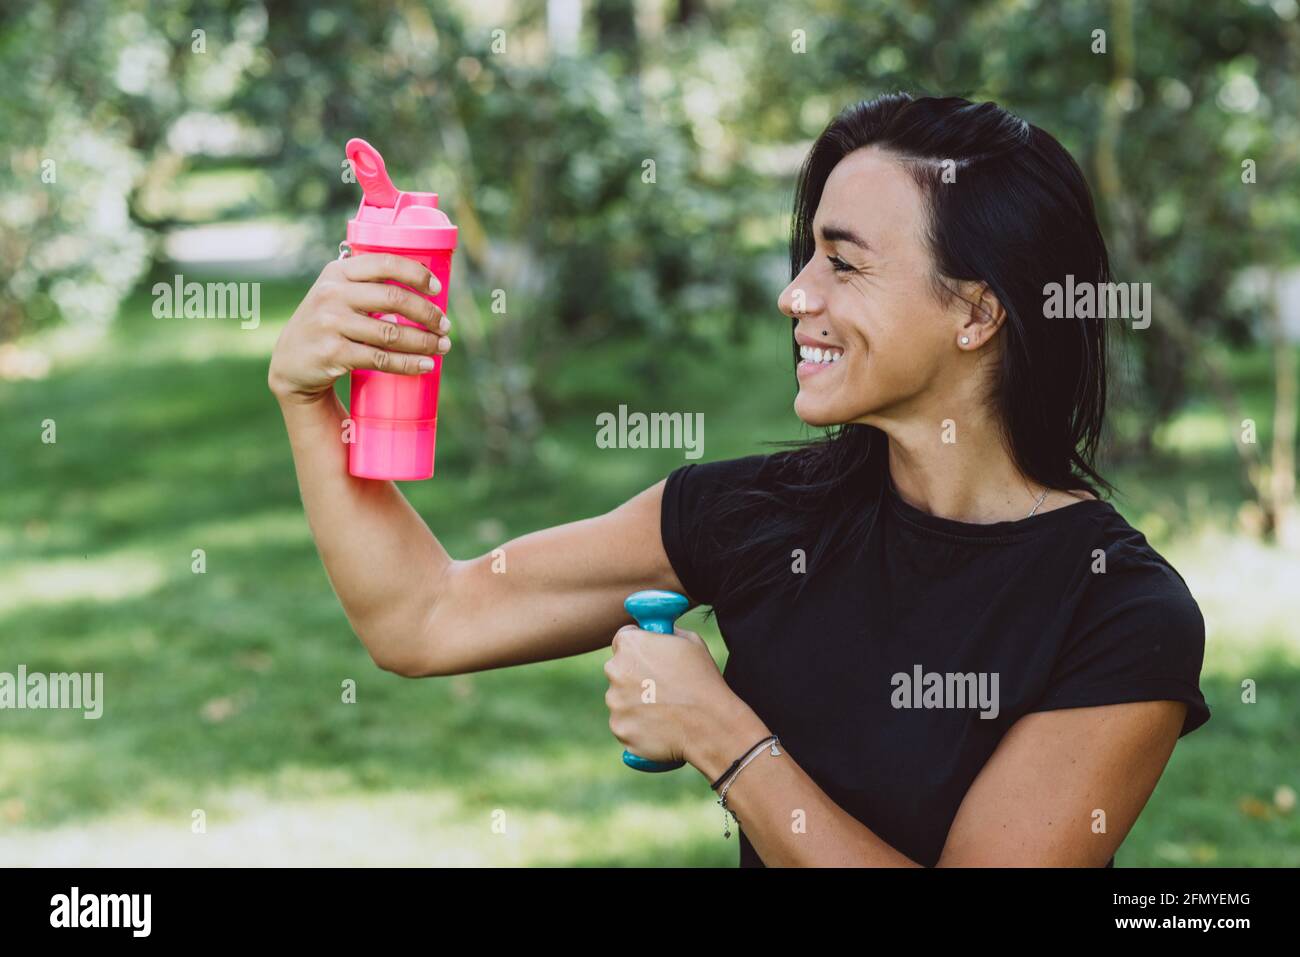 Require 20. Девушка смешивает шейкер. Девушка пьет протеин. Девушка спортсменка с предметом в руке фото. Девушка спортсменка с массажером в руке фото.